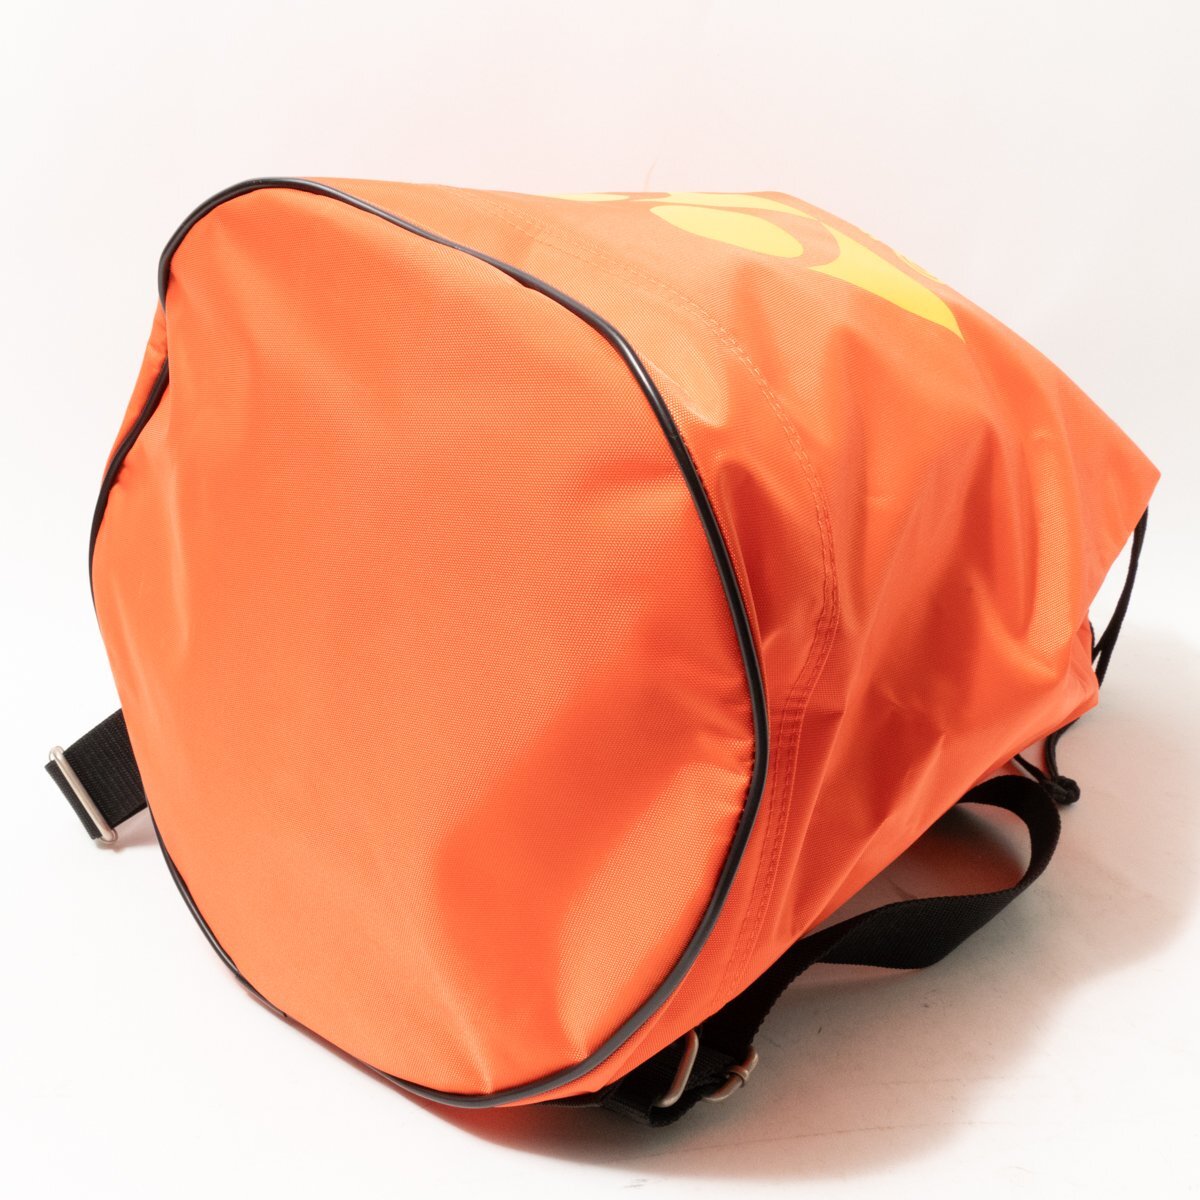  не использовался с биркой YONEX Yonex bonsak2016 China Inter высокий модель orange желтый нейлон унисекс бадминтон bag